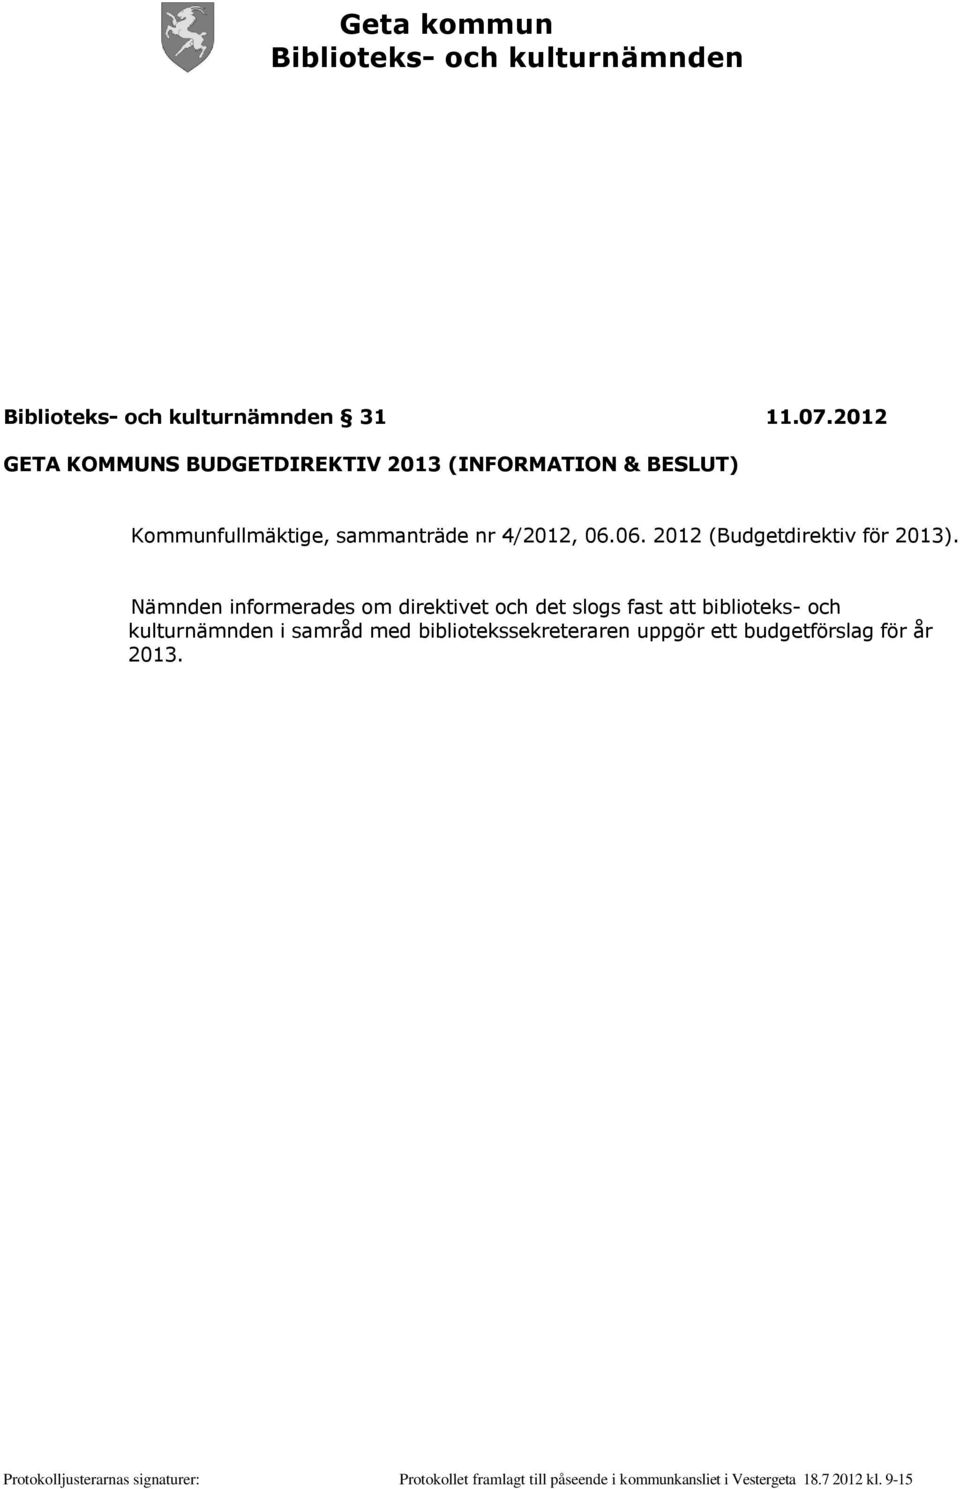 Kommunfullmäktige, sammanträde nr 4/2012, 06.06. 2012 (Budgetdirektiv för 2013).